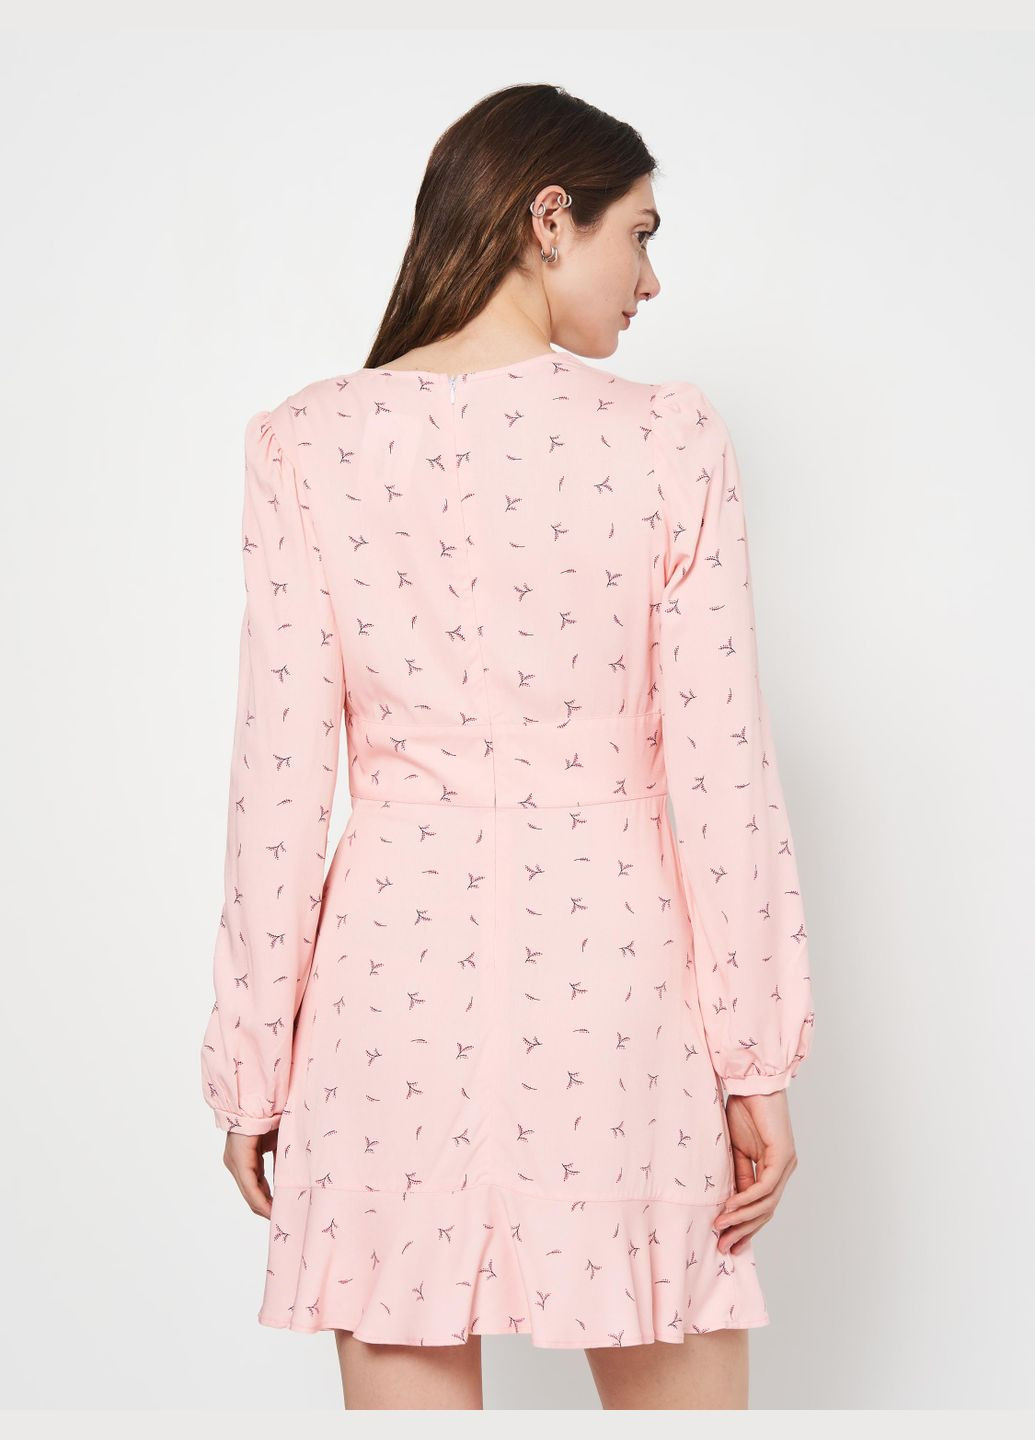 Розовое платье демисезон,розовый в узоры,suit`u Suit'u